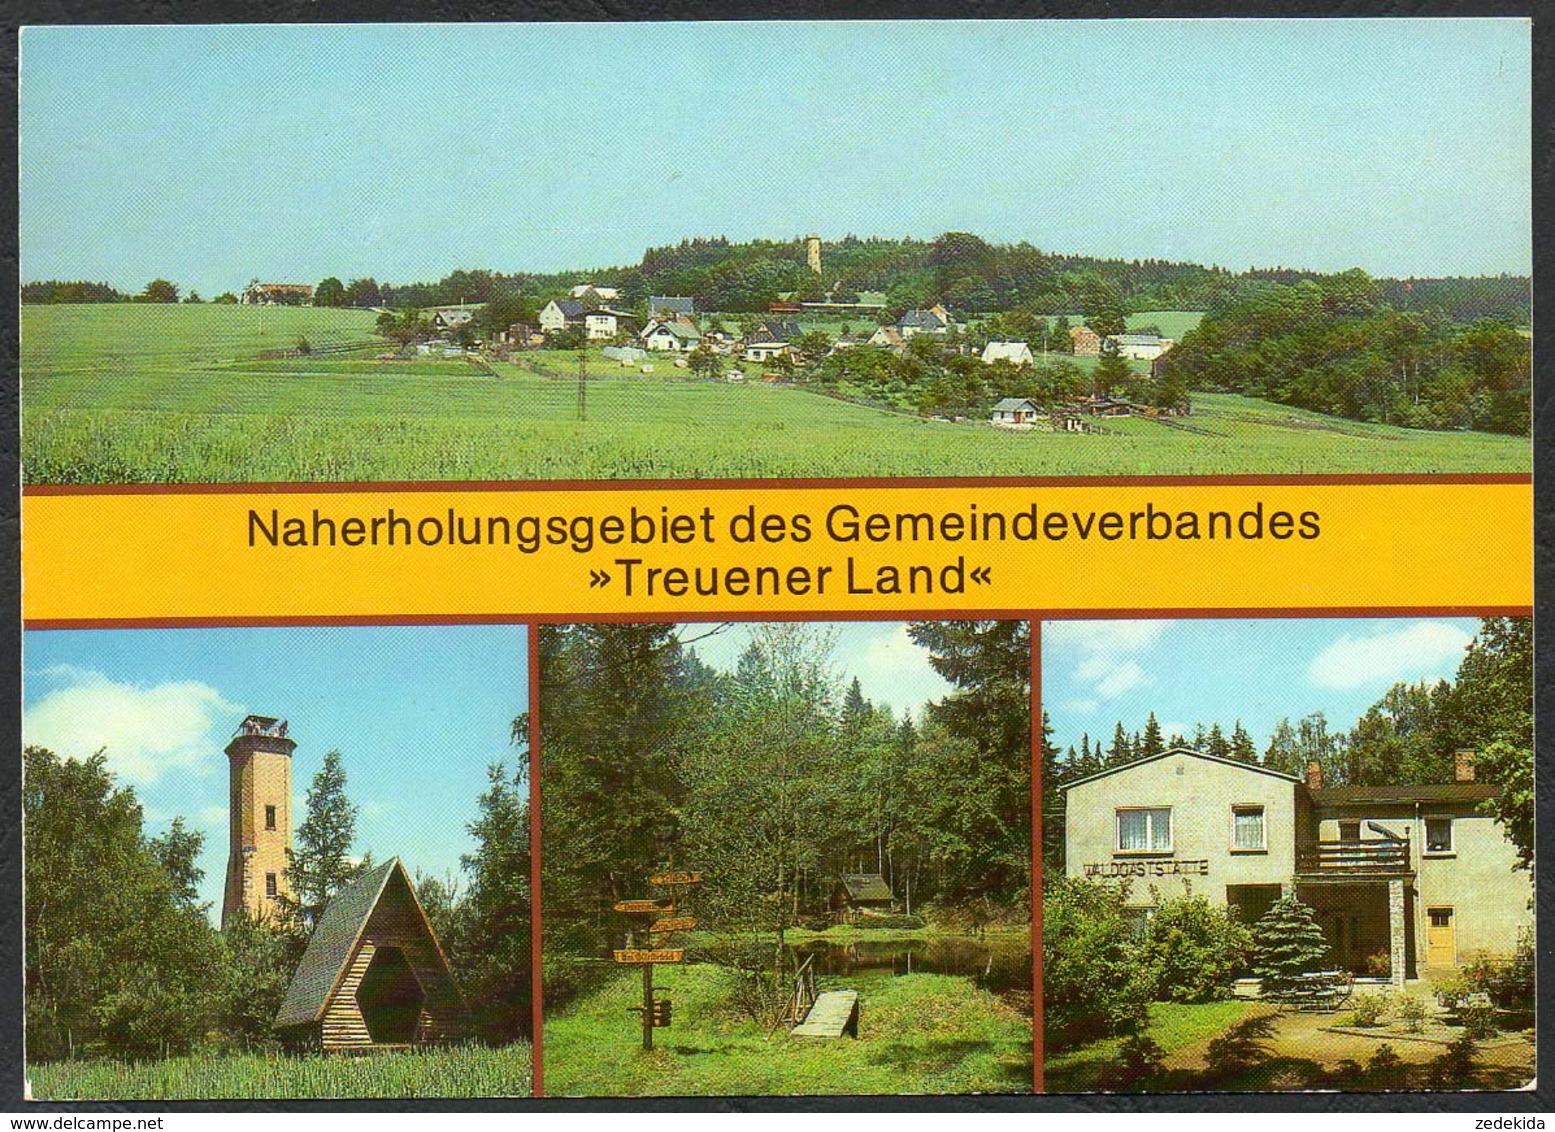 C8645 - TOP Treuen OT Perlas Turm OT Buch Waldgaststätte - Bild Und Heimat Reichenbach - Auerbach (Vogtland)